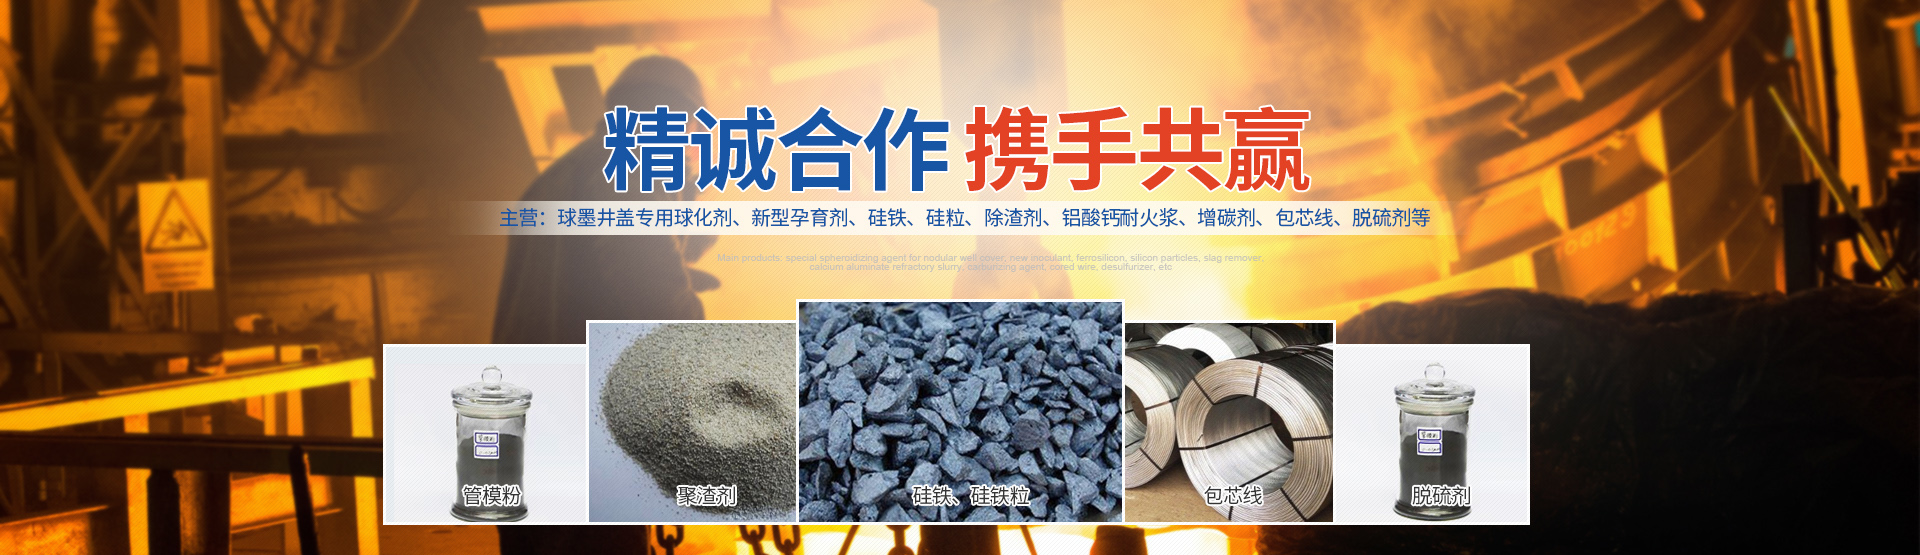 安阳县威进铸造材料科技有限公司